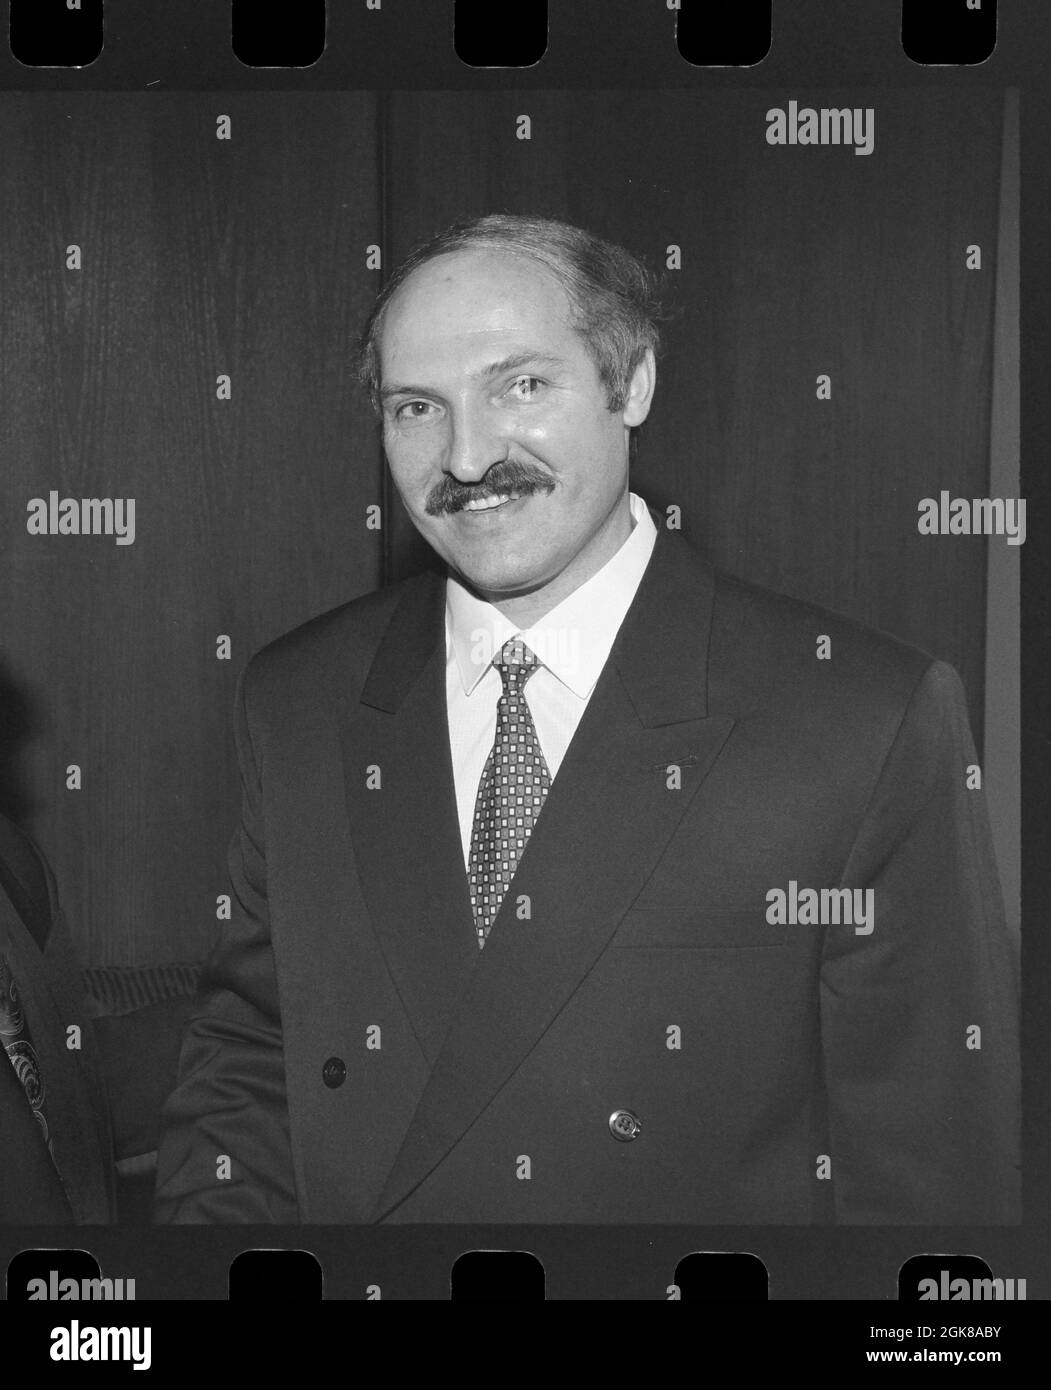 Alexander Lukashenko President of Belarus, 'Europe's last dictator' October 26, 1995. Stock Photo